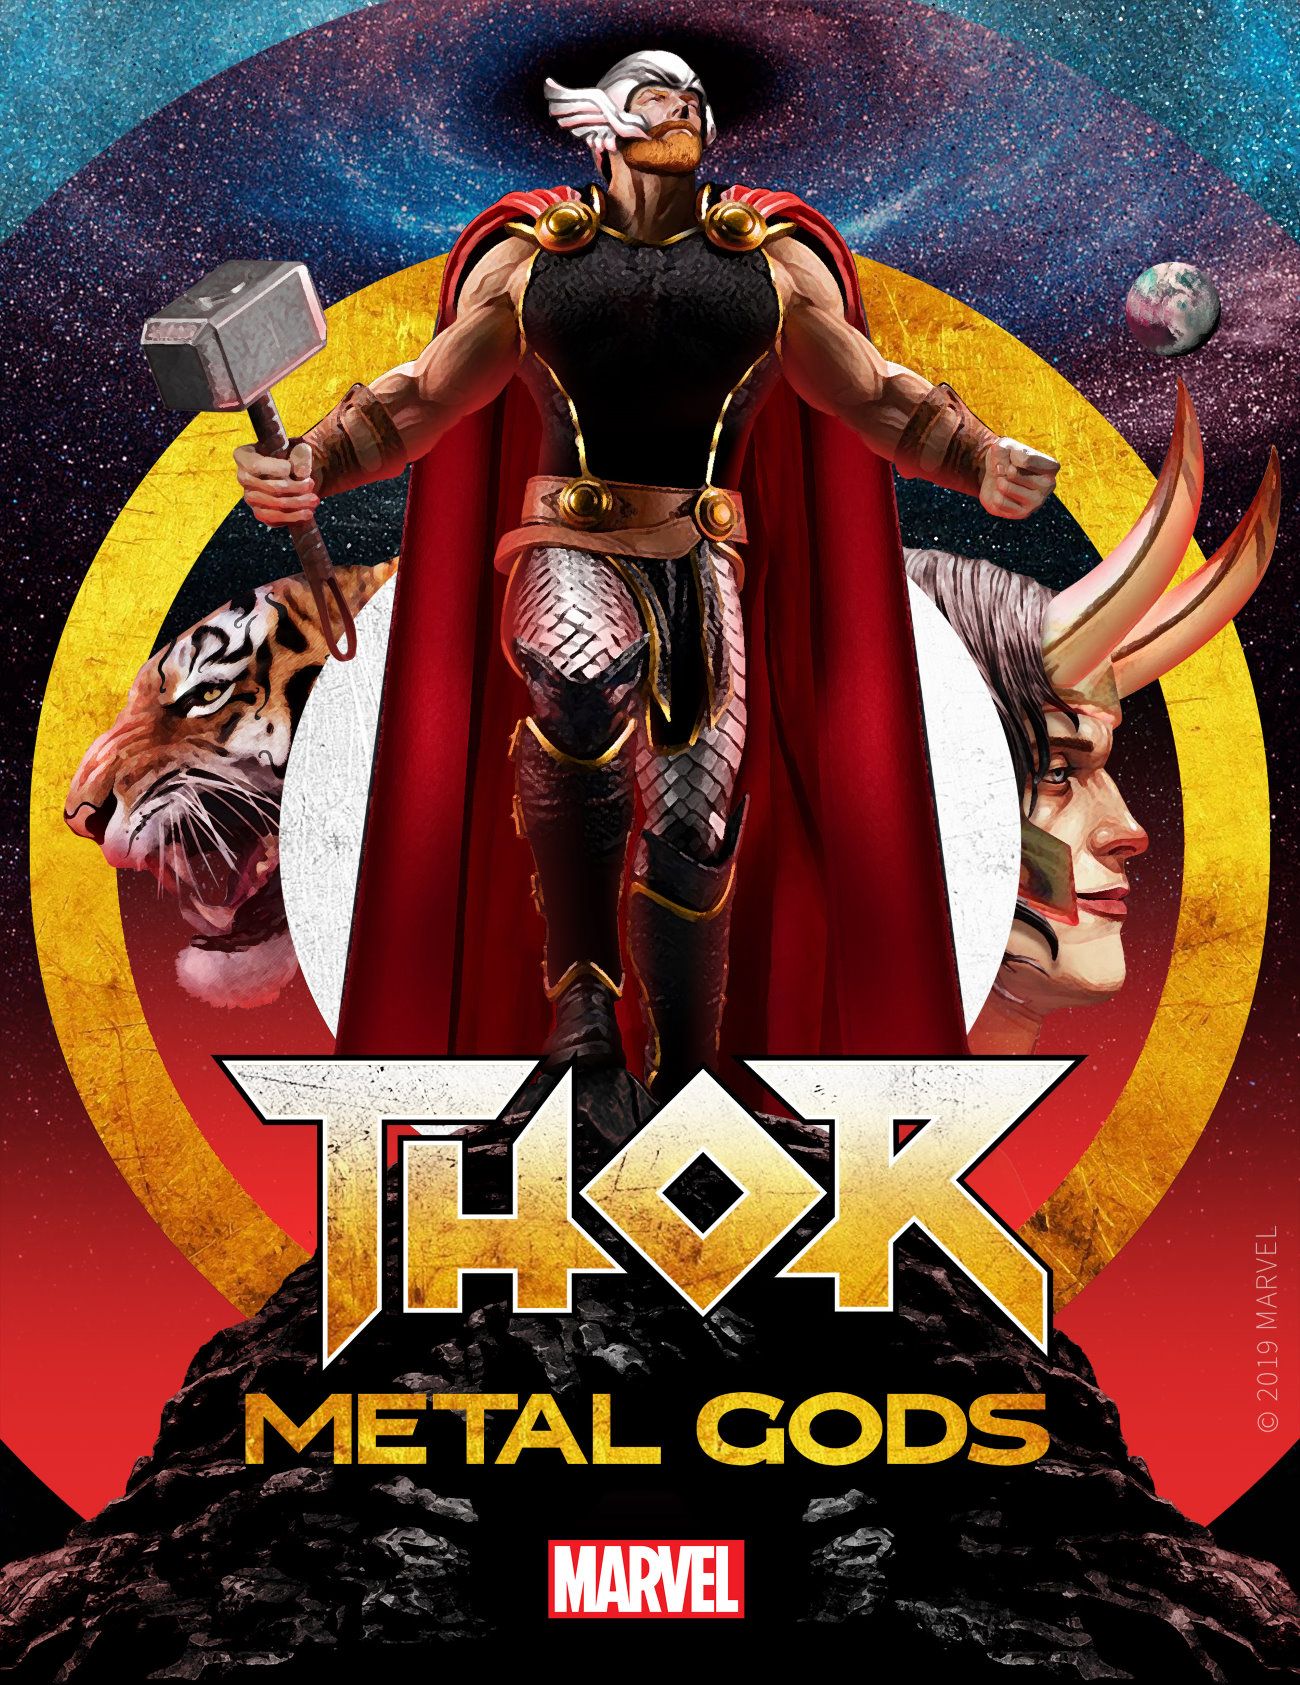 Thor Metal Gods Serial Box Artwork